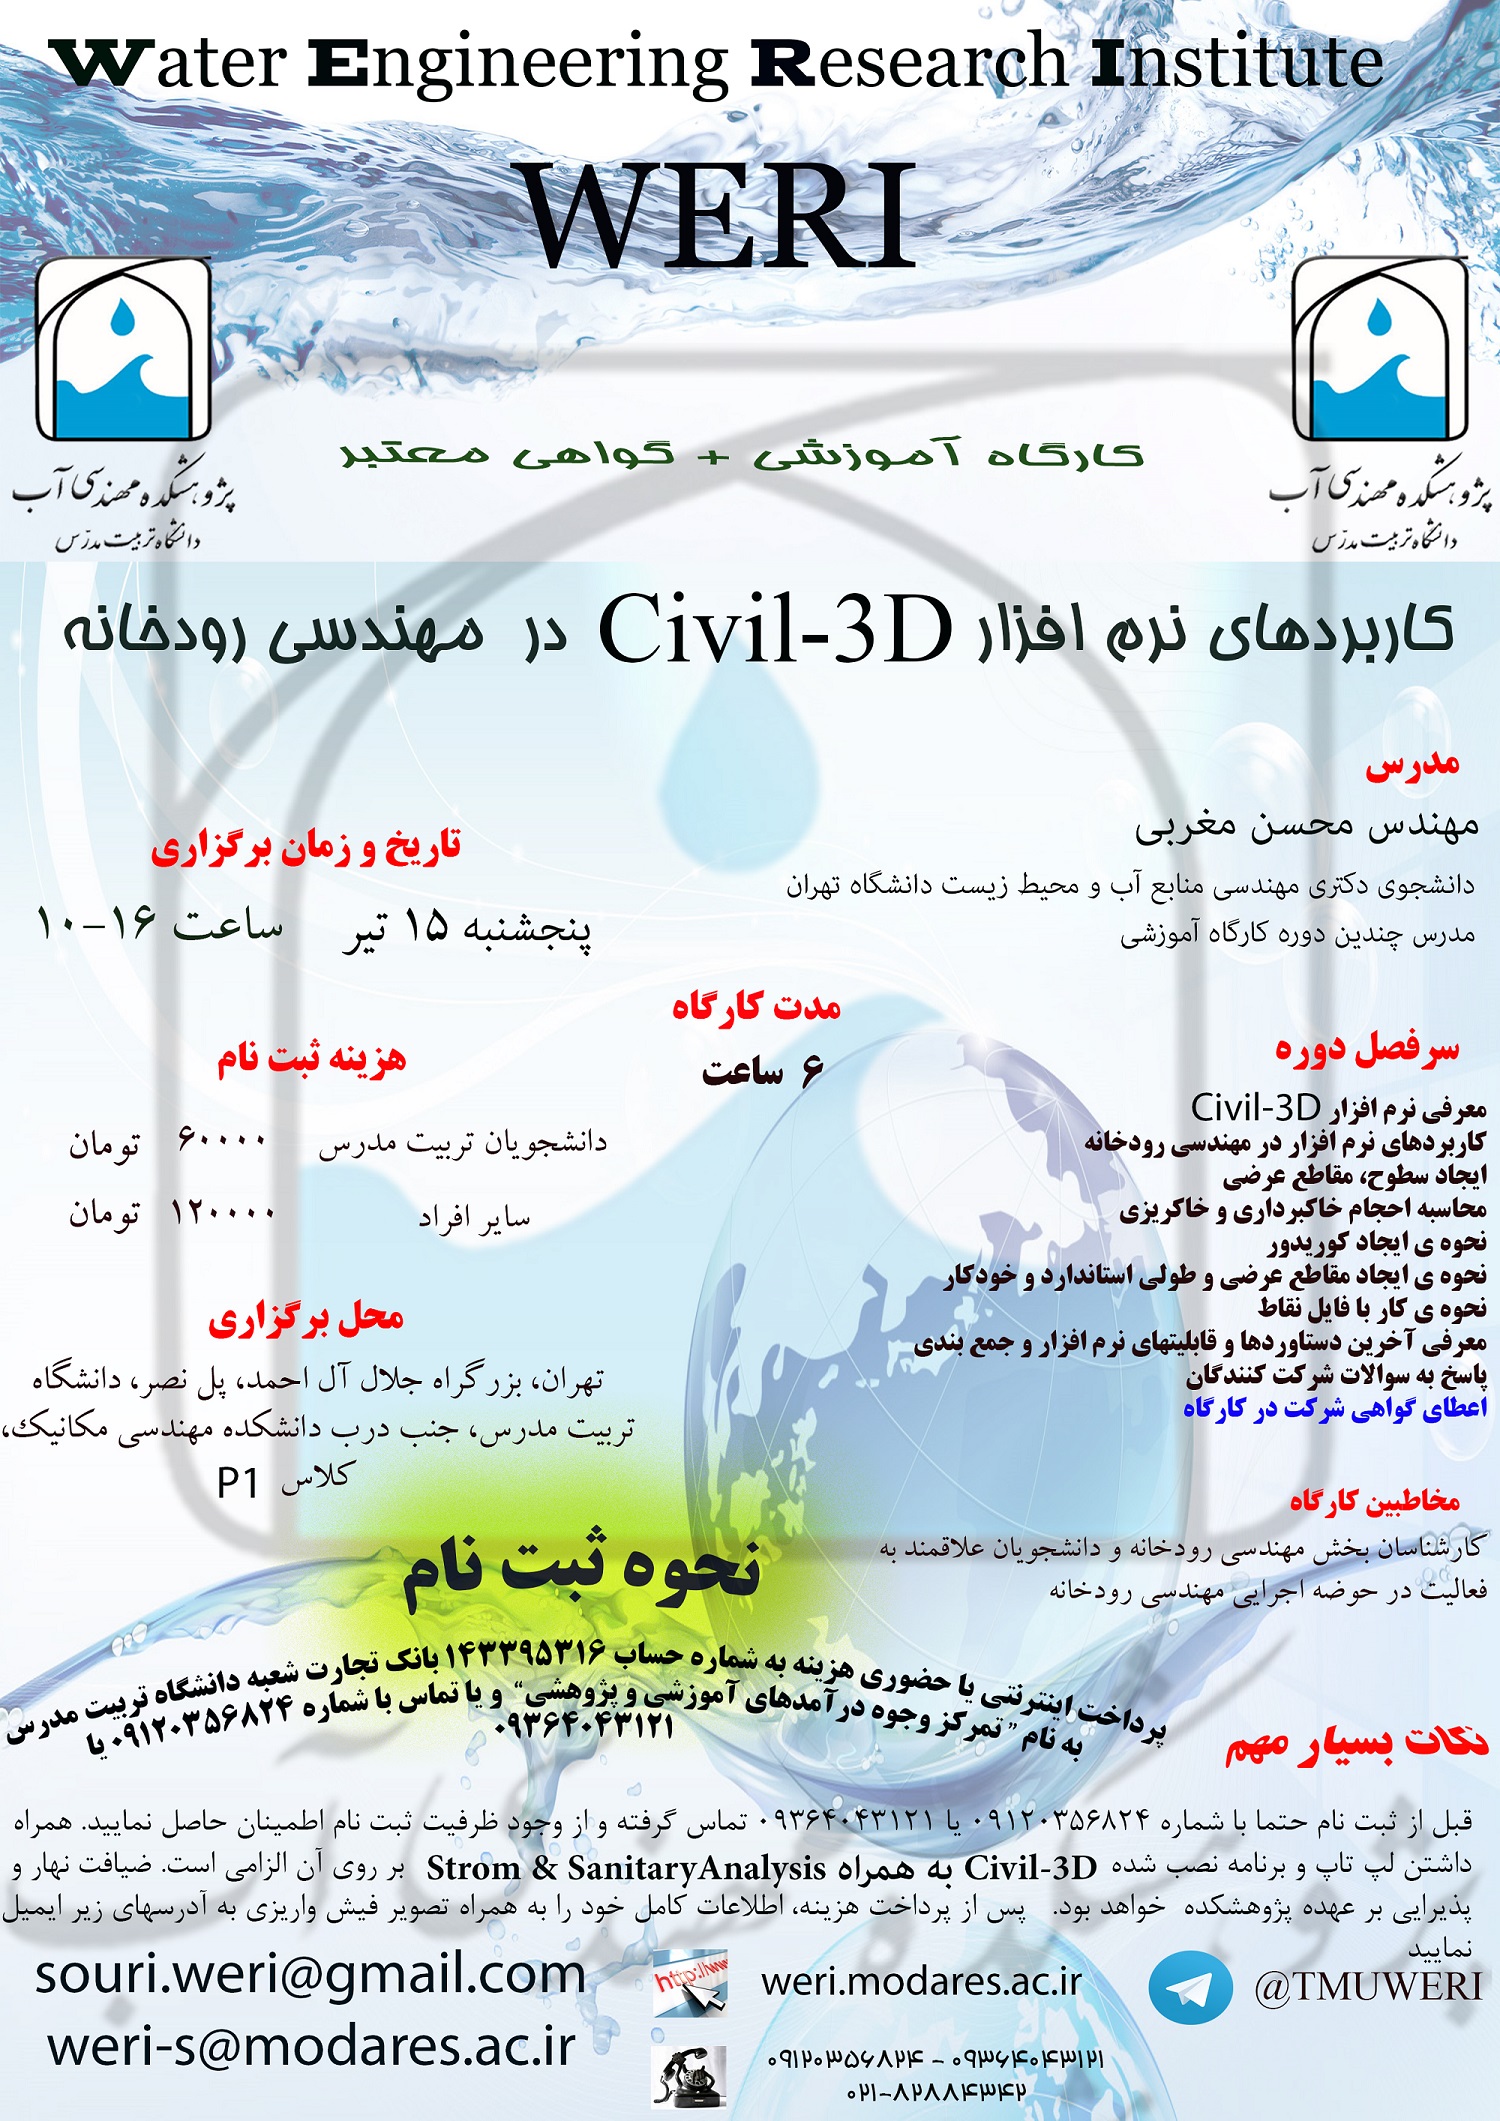 کارگاه آموزشی کاربردهای نرم افزار Civil-3D در مهندسی رودخانه- پنجشنبه 15 تیر 1396